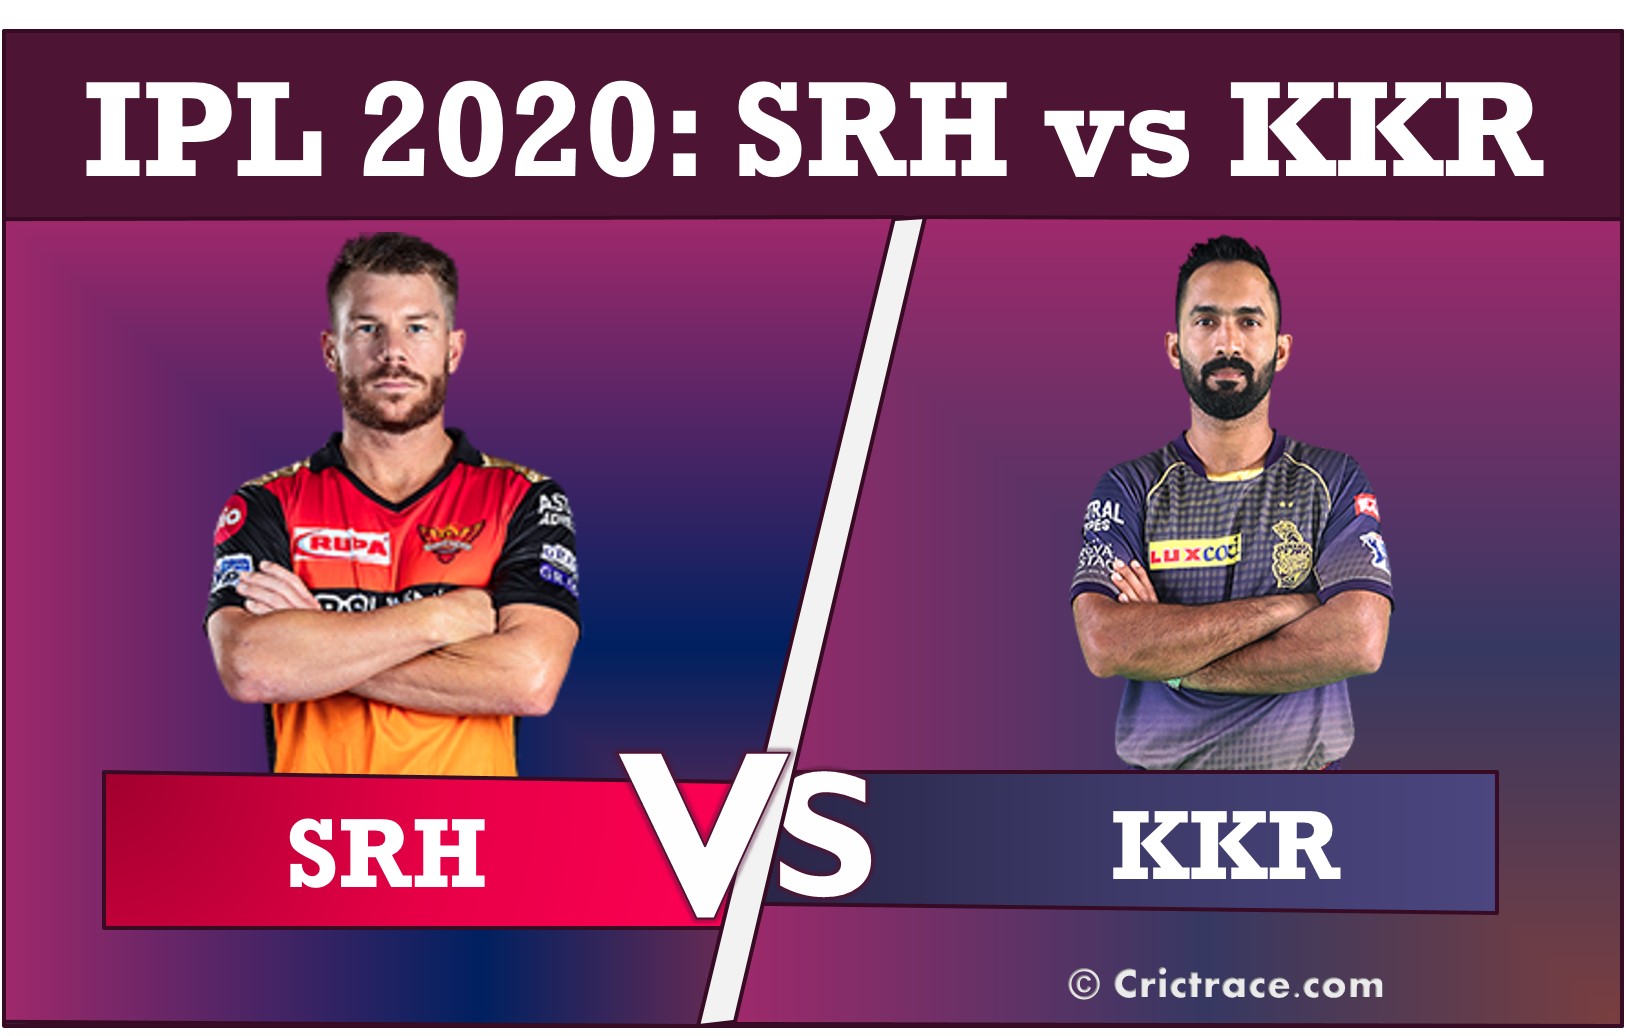 SRH vs KKR